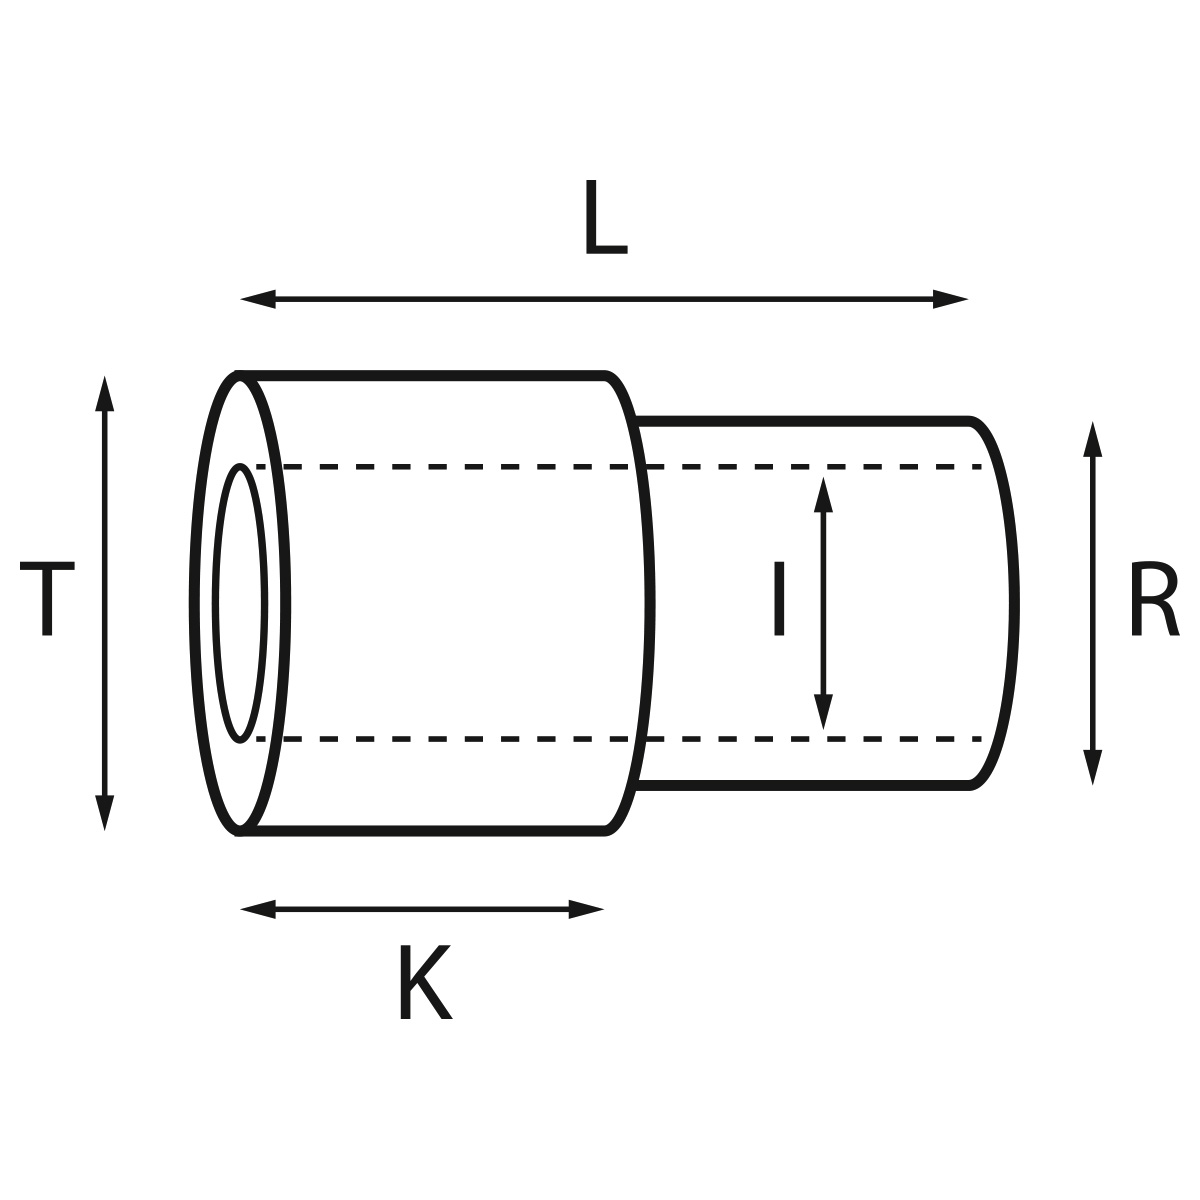 Gehäusetube Typ AS 13826, Tubus Ø 2 mm, Gesamtlänge 3,6 mm, für wasserdichte Kronen